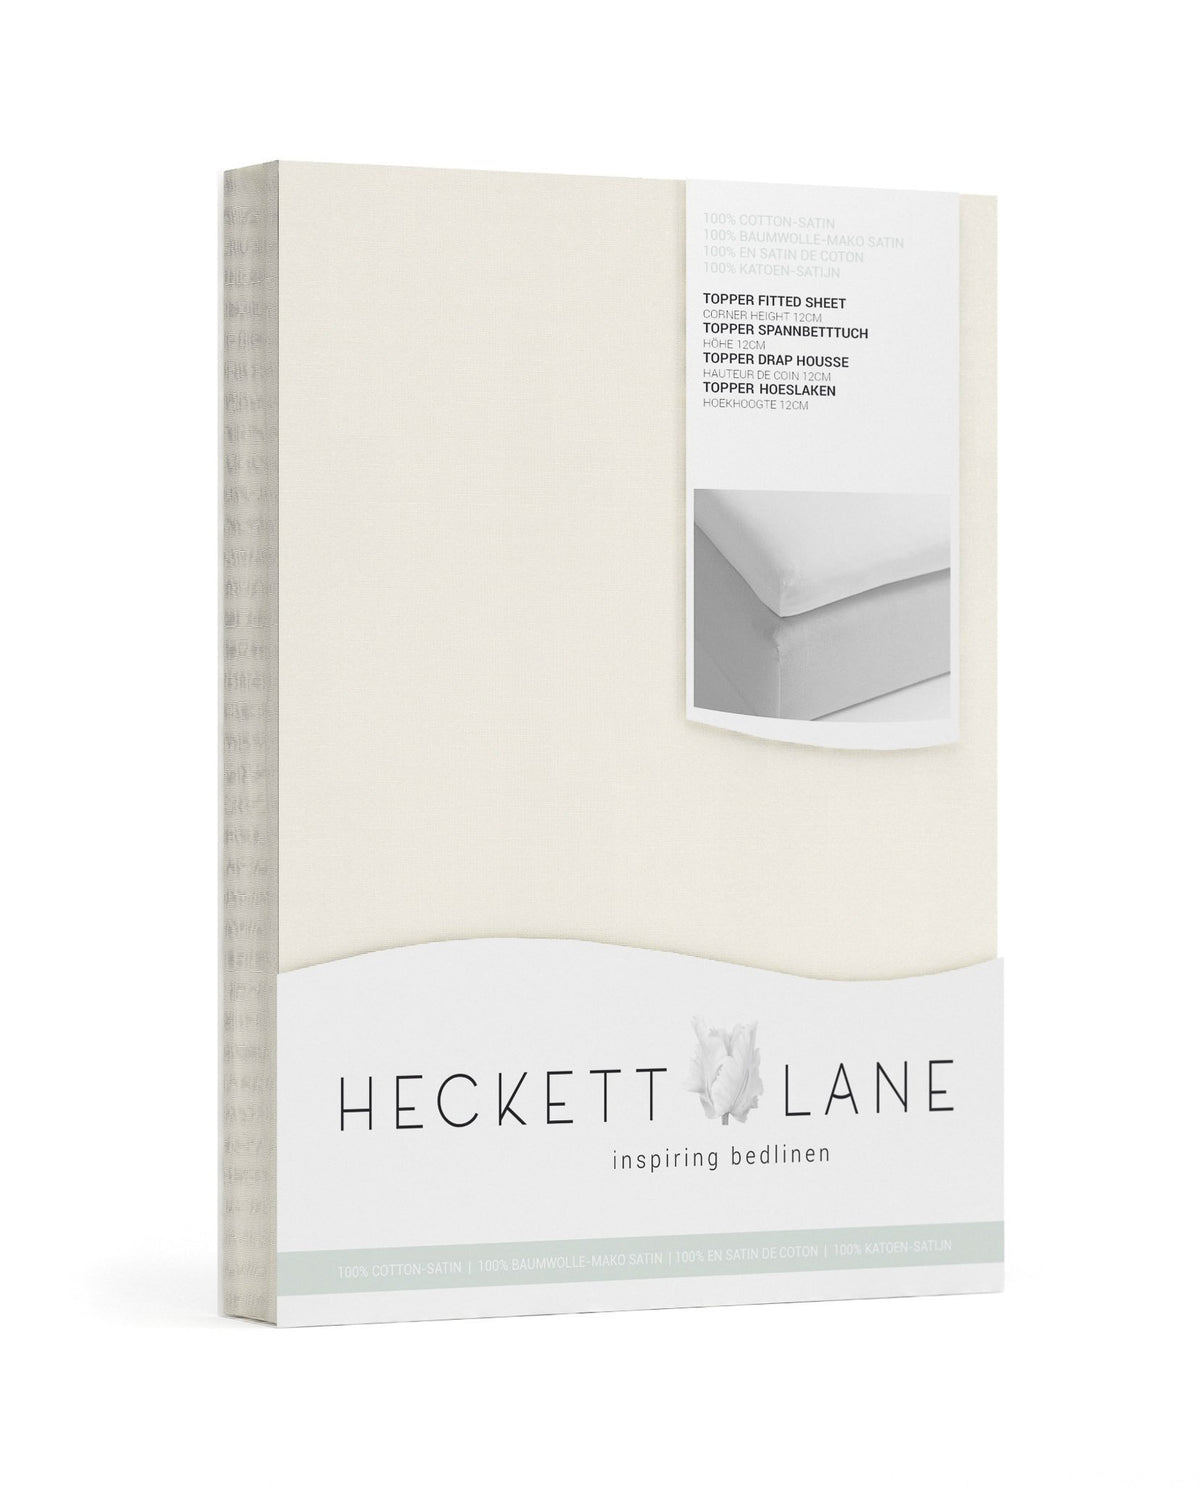 TOPPER HOESLAKEN - Katoen satijn (250TC) wit topper hoeslaken HECKETTLANE 90/200+12 cm Off-white 